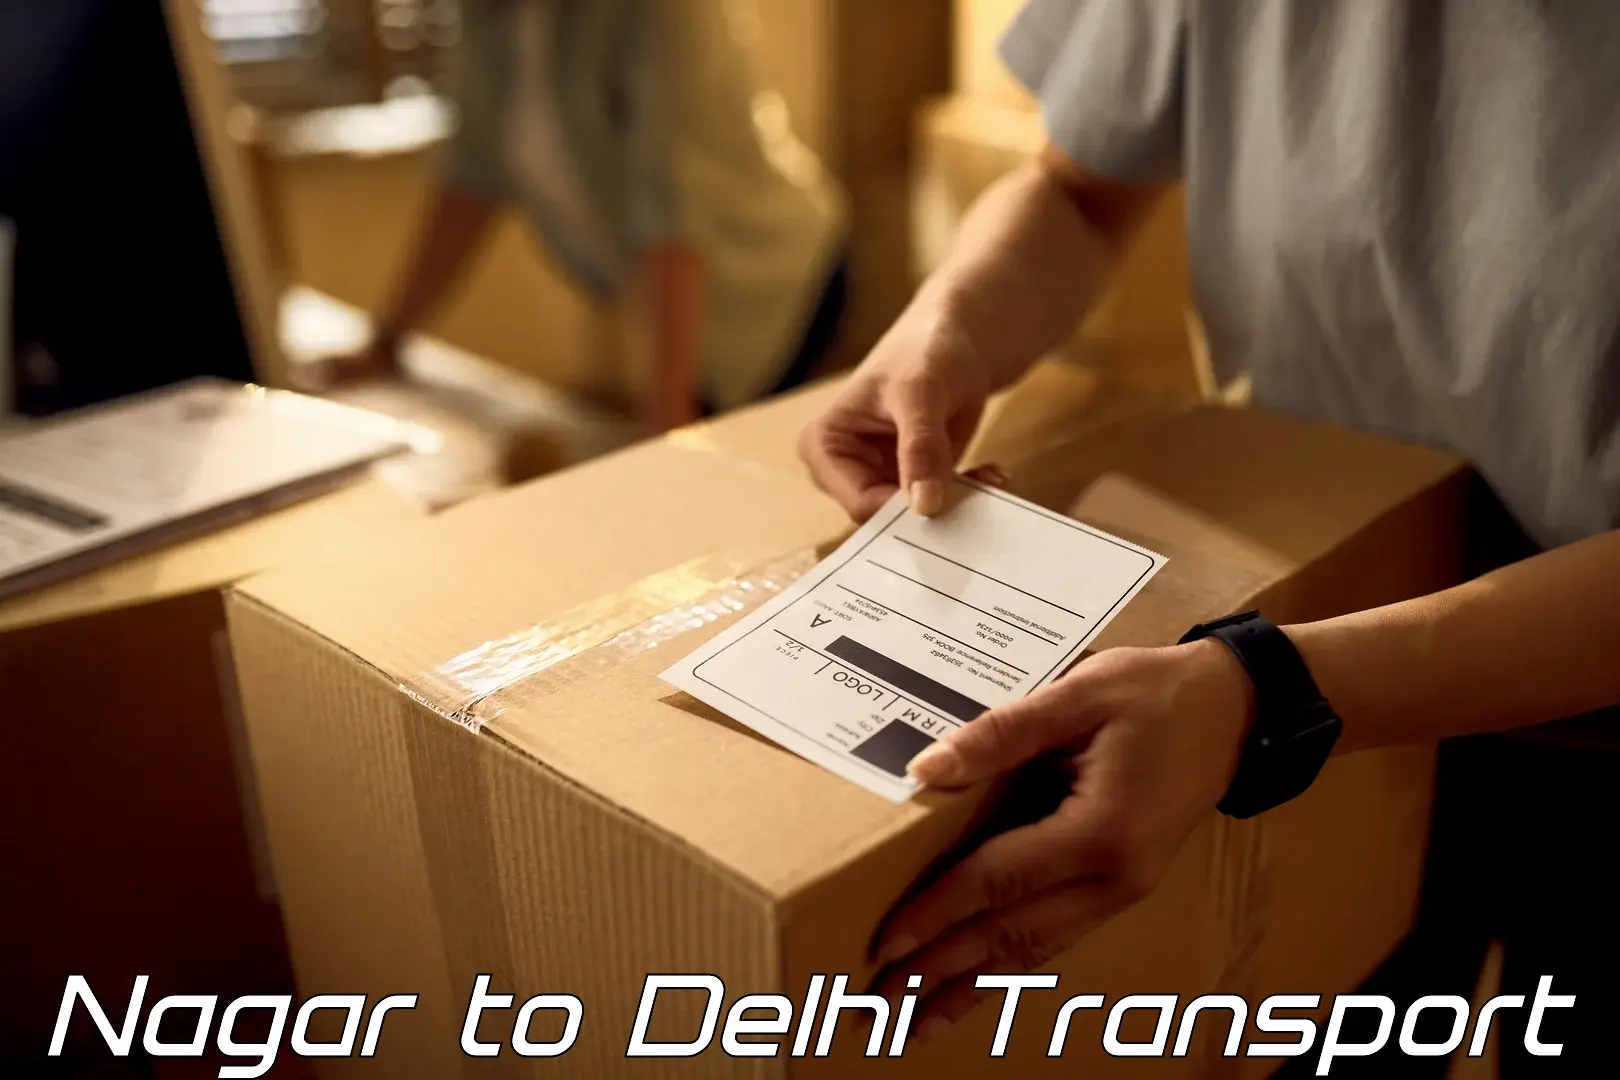 Transport shared services Nagar to University of Delhi